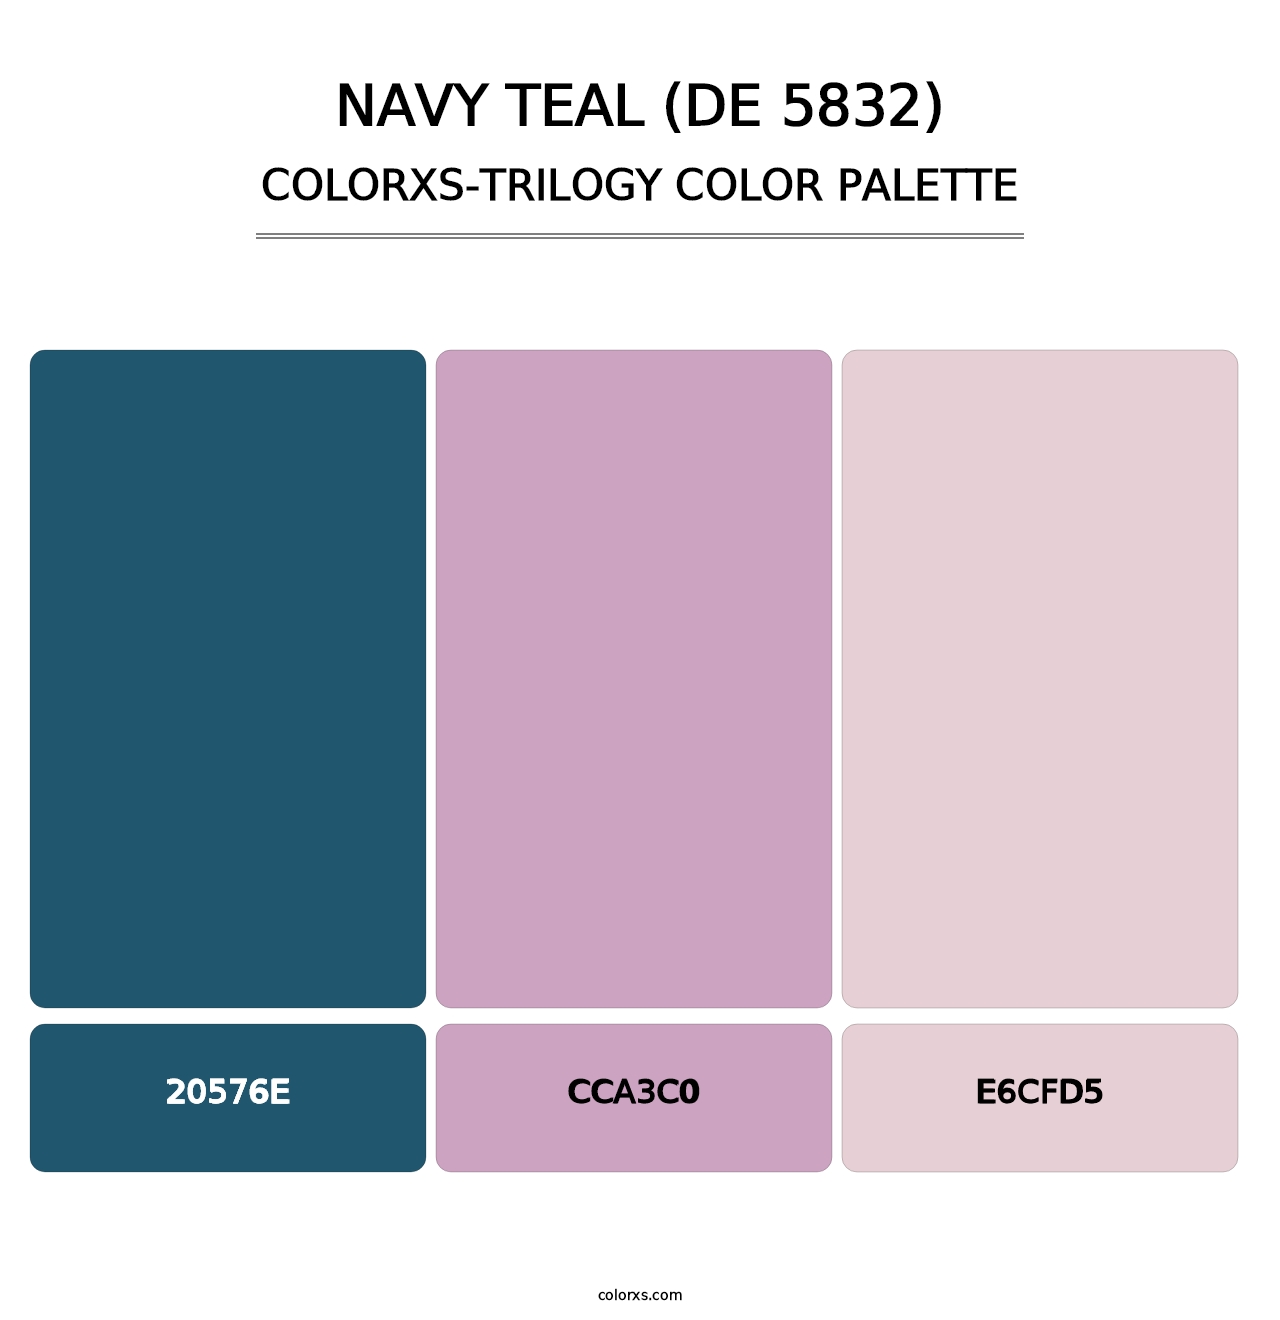 Navy Teal (DE 5832) - Colorxs Trilogy Palette